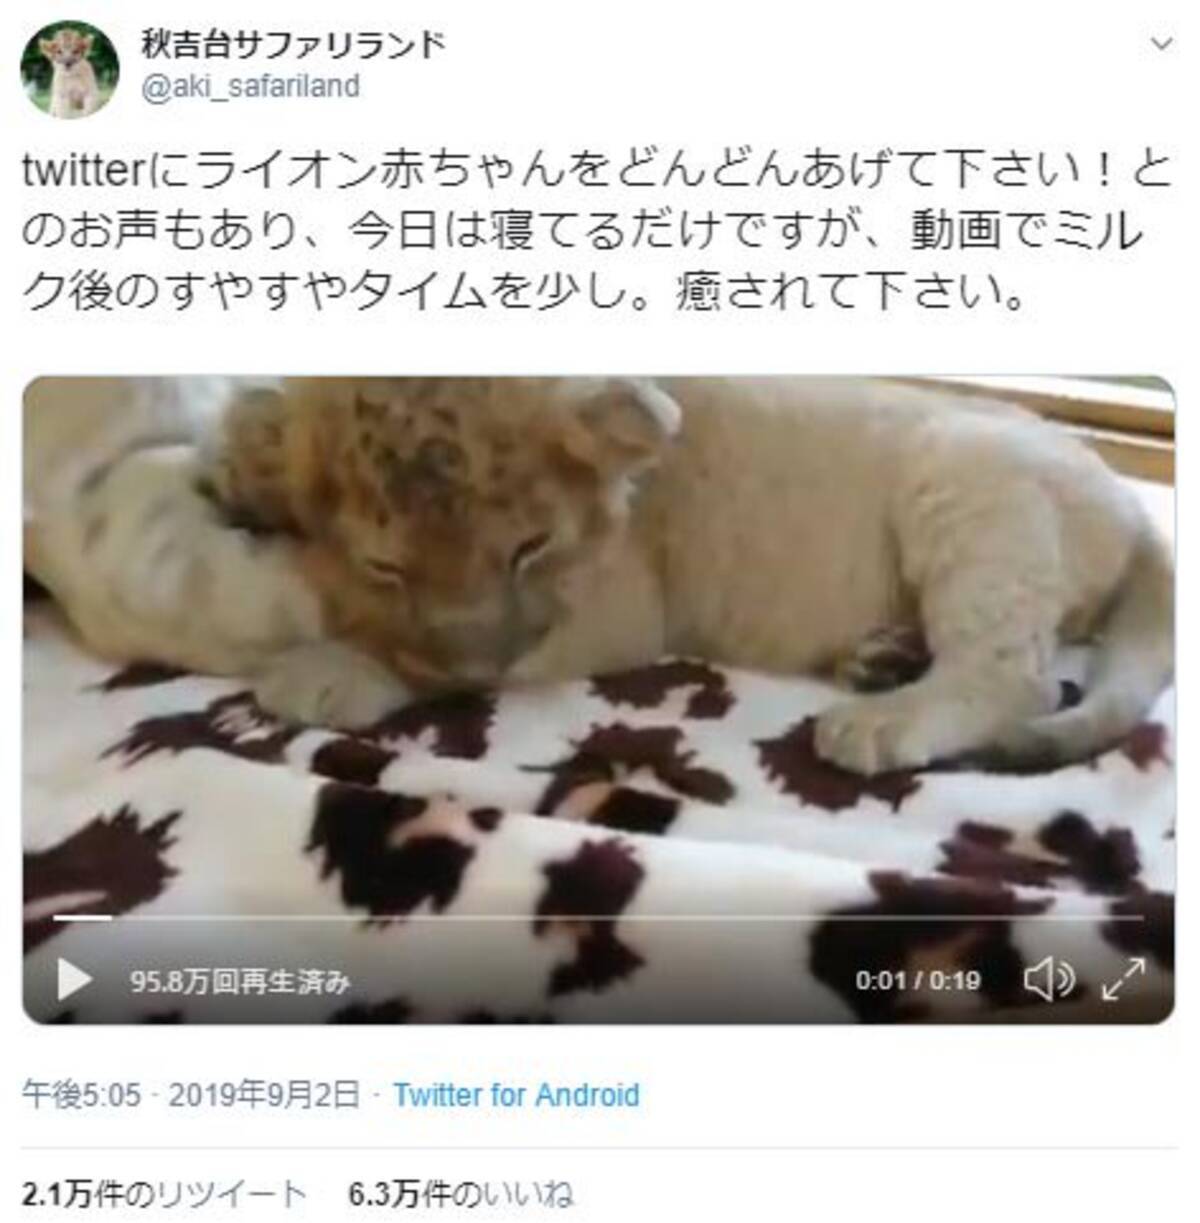 ライオンの赤ちゃんの寝姿がネットで反響 ぬいぐるみみたい リアルライオンキング 19年9月8日 エキサイトニュース